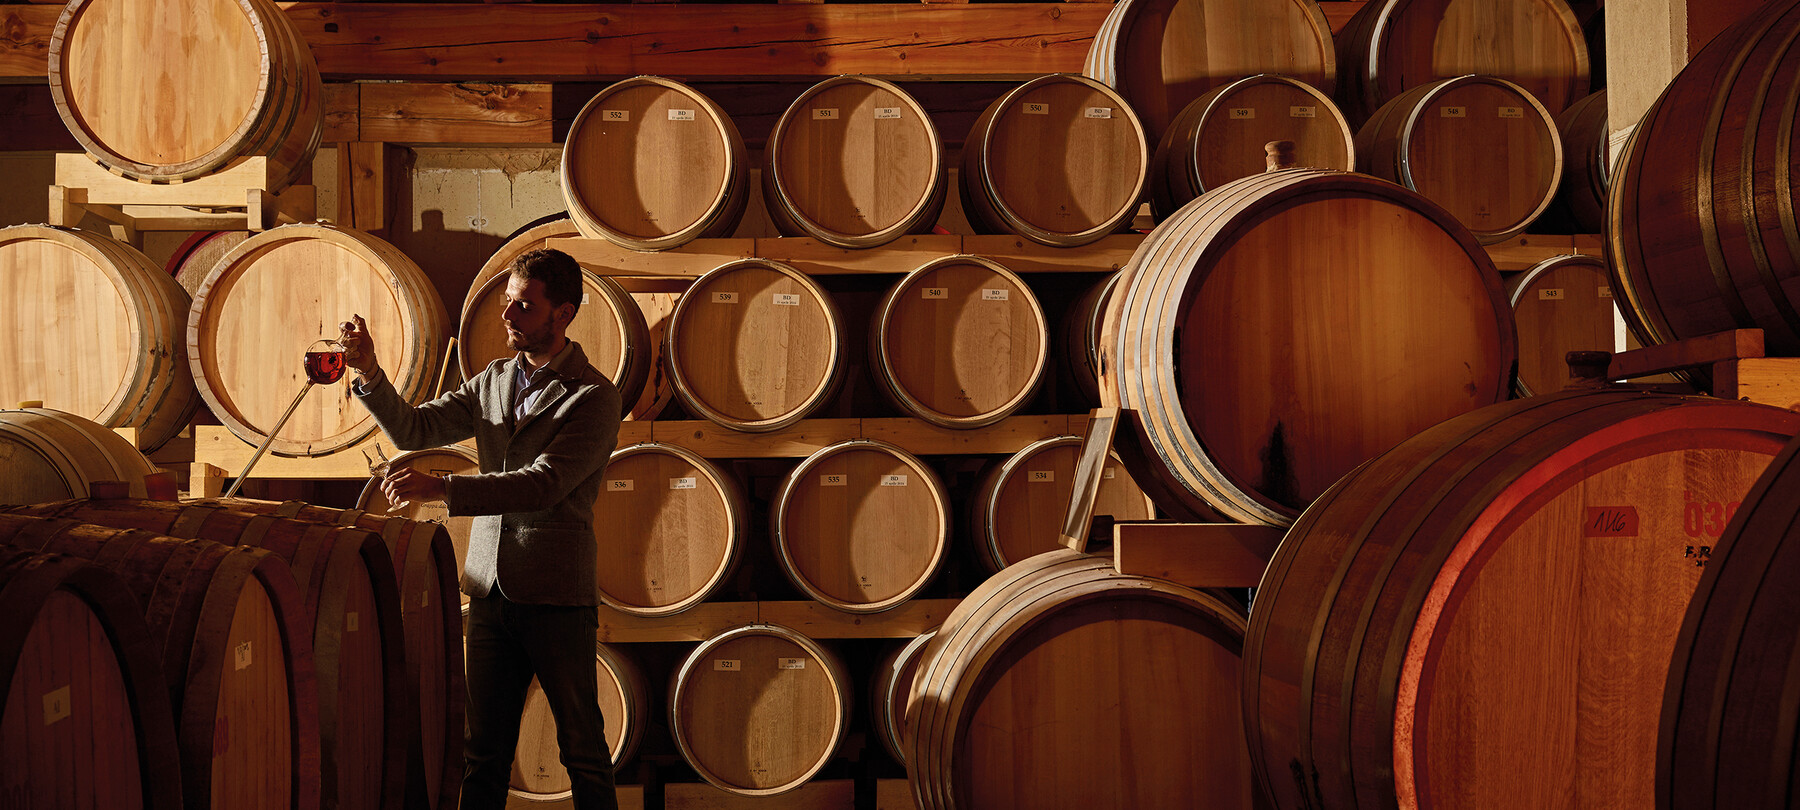 La grappa del Trentino: un distillato di territorio e qualità